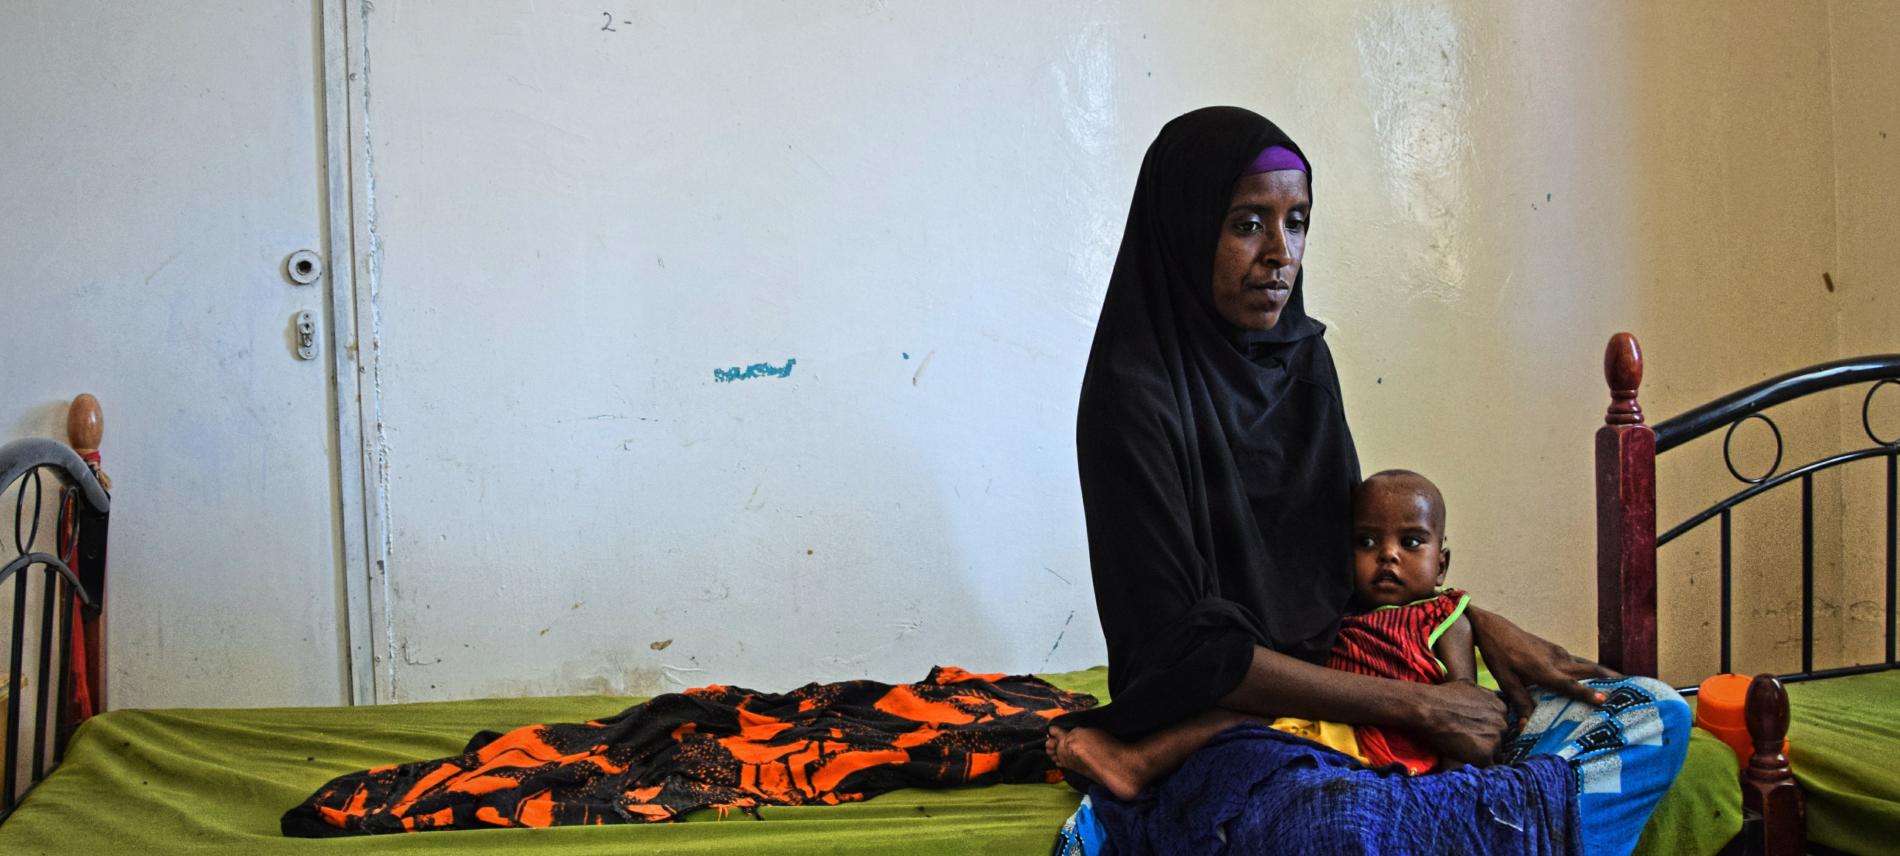 Menschen in Somalia, Äthiopien und Yemen leiden unter Hunger und der Cholerakrise. Foto: Jelle Boone